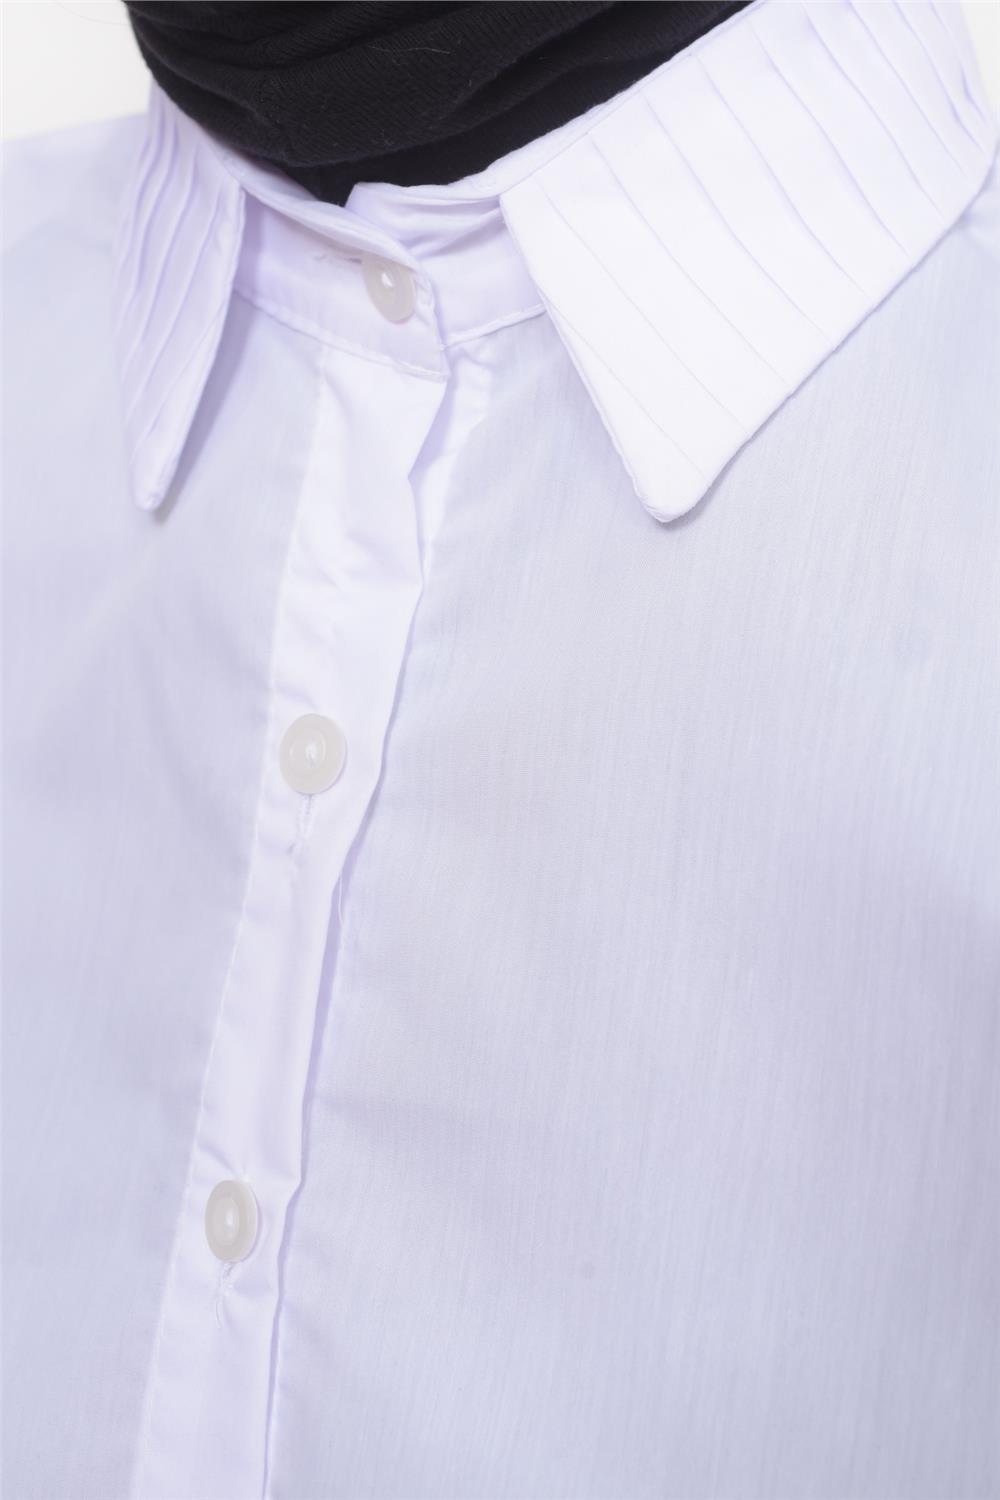 Beyaz Gömlek Yaka Tesettür Boyunluk | Altobeh Tesettür Giyim